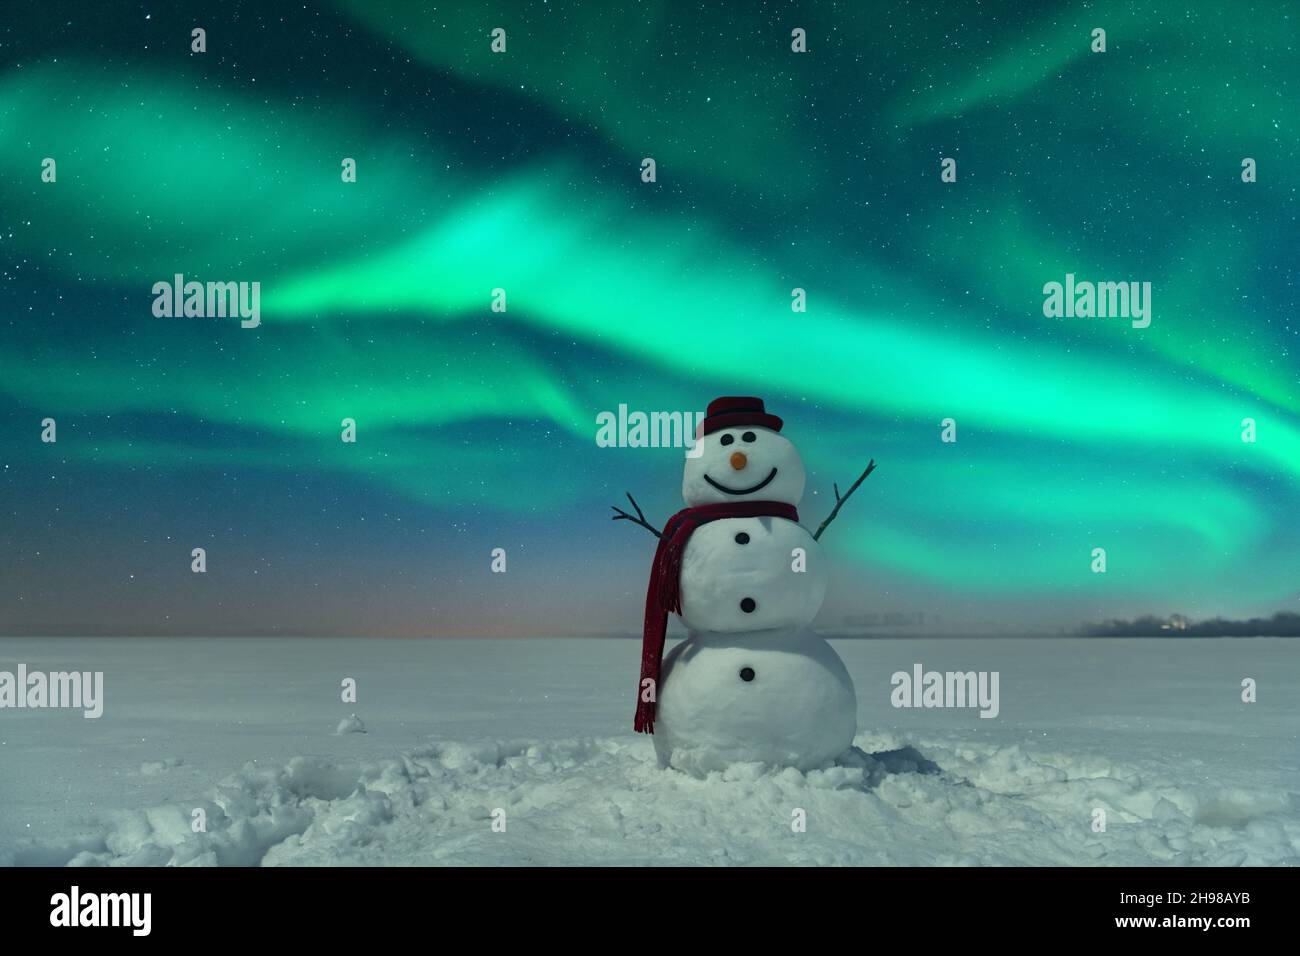 Divertente pupazzo di neve in elegante cappello rosso e cuoio capelluto rosso sul campo nevoso sullo sfondo di un incredibile cielo stellato con Aurora borealis. Panorama notturno incredibile. Aurora boreale in campo invernale Foto Stock